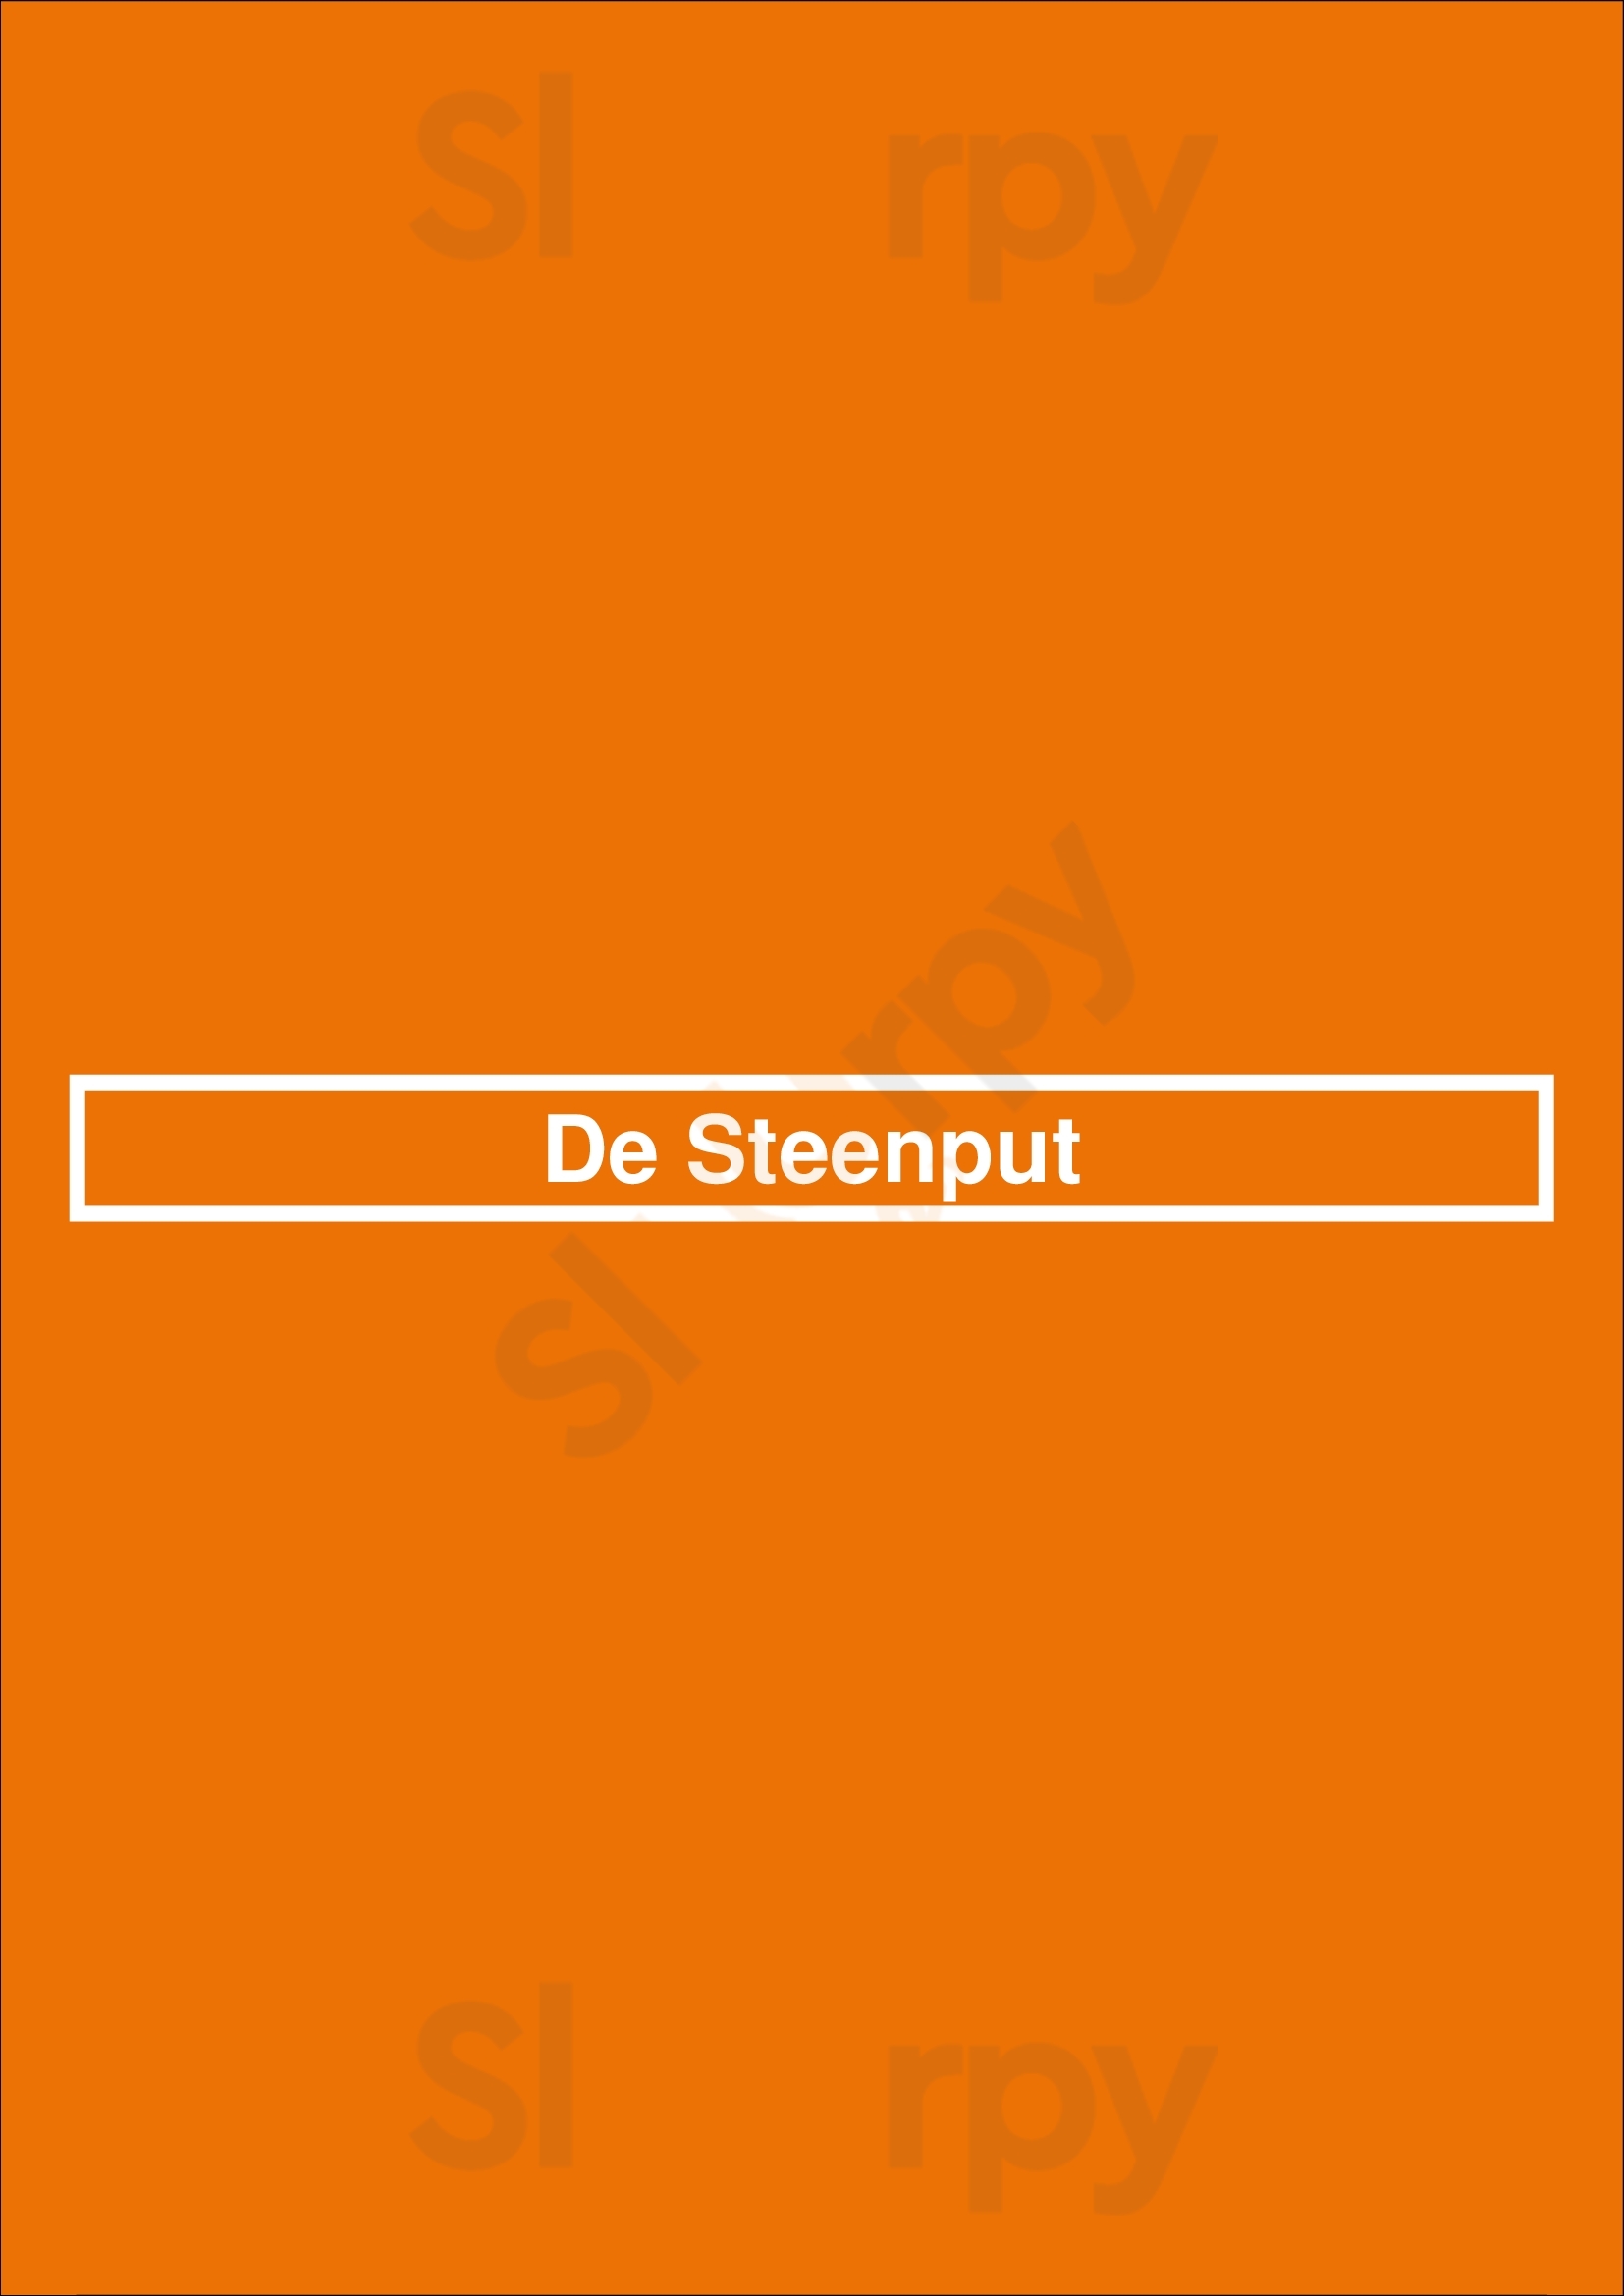 De Steenput Bruges Menu - 1